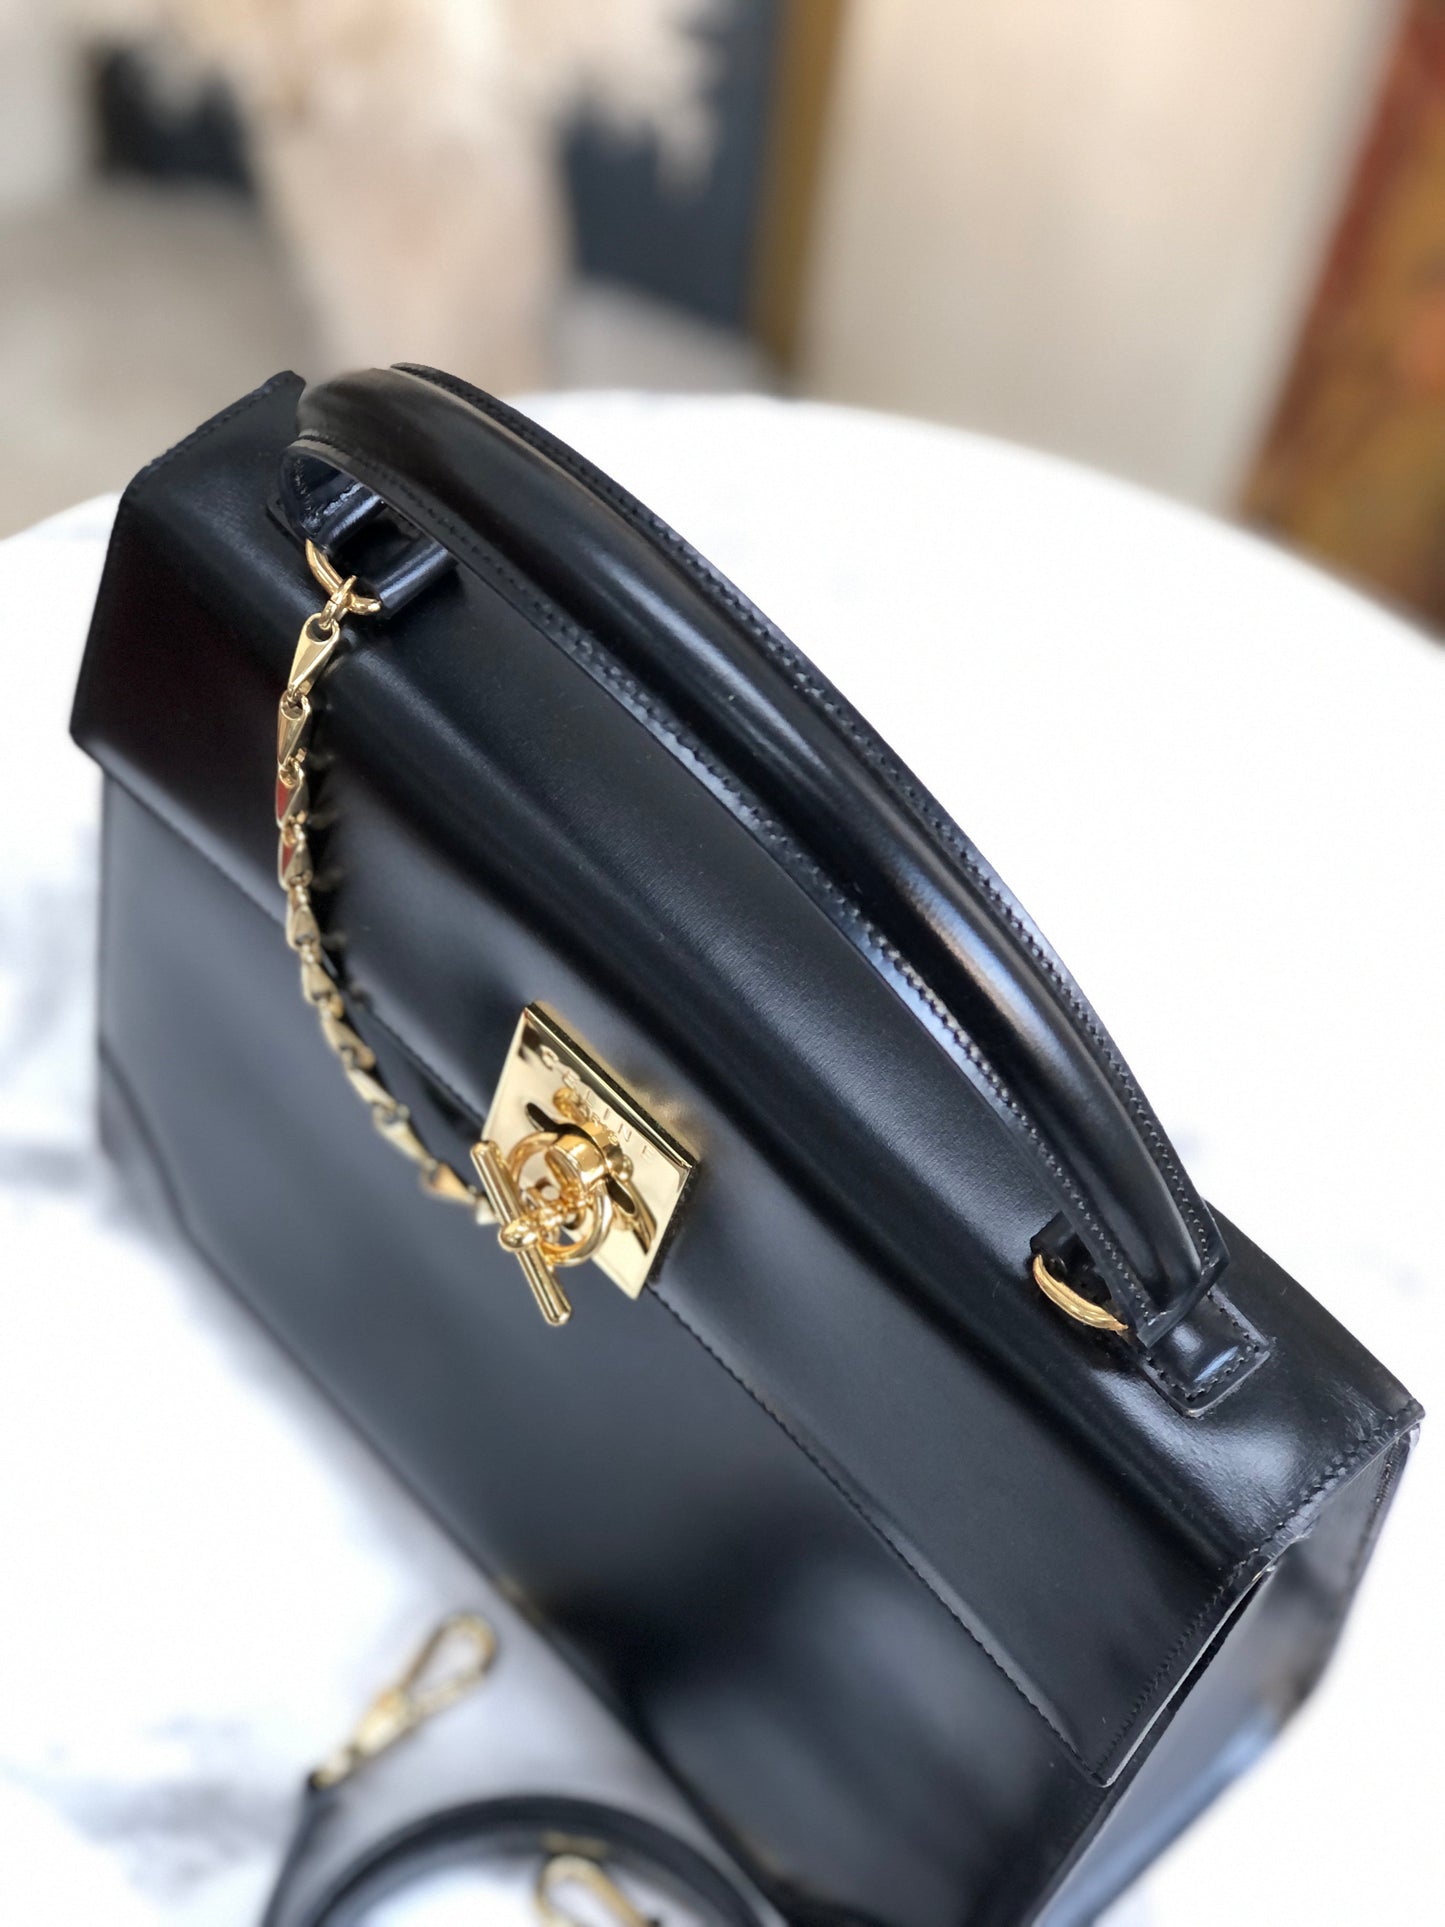 CELINE Mantel Chain Gancini Handbag Crossbody Shoulder bag Black Vintage Old Celine 7vuth5